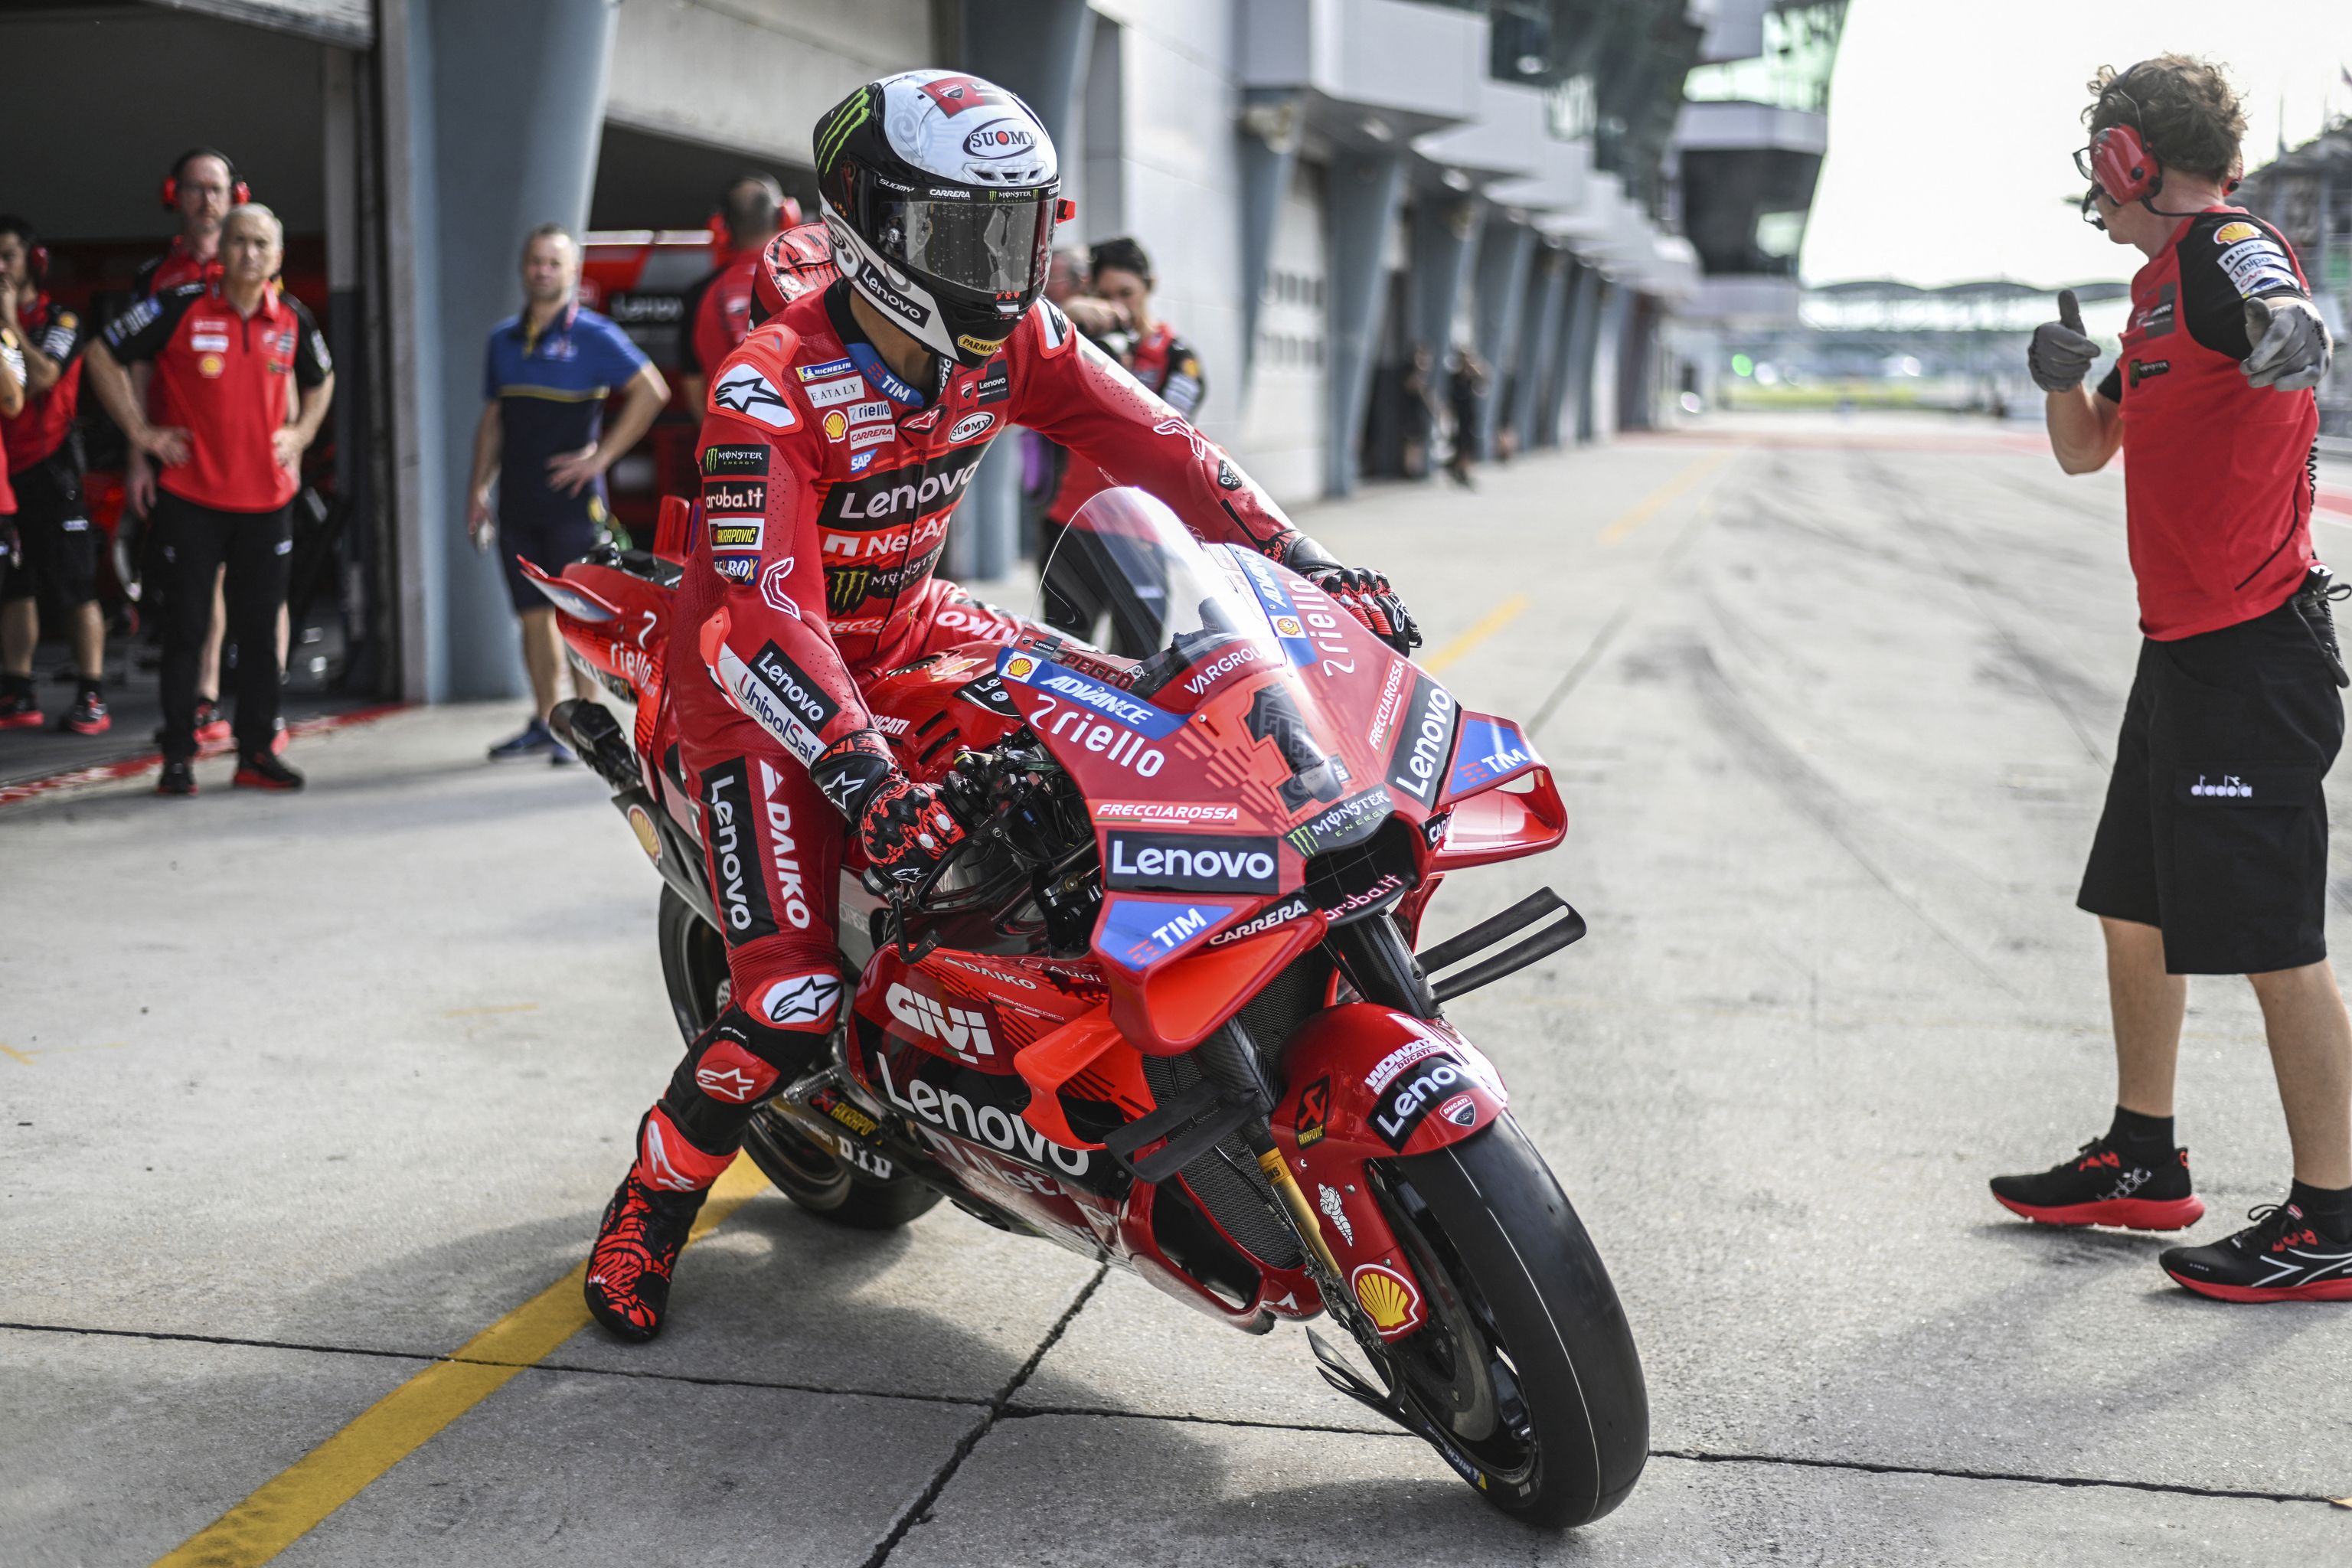 Francesco Bagnaia saliendo de un box con su Ducati, durante la pretemporada en Qatar.